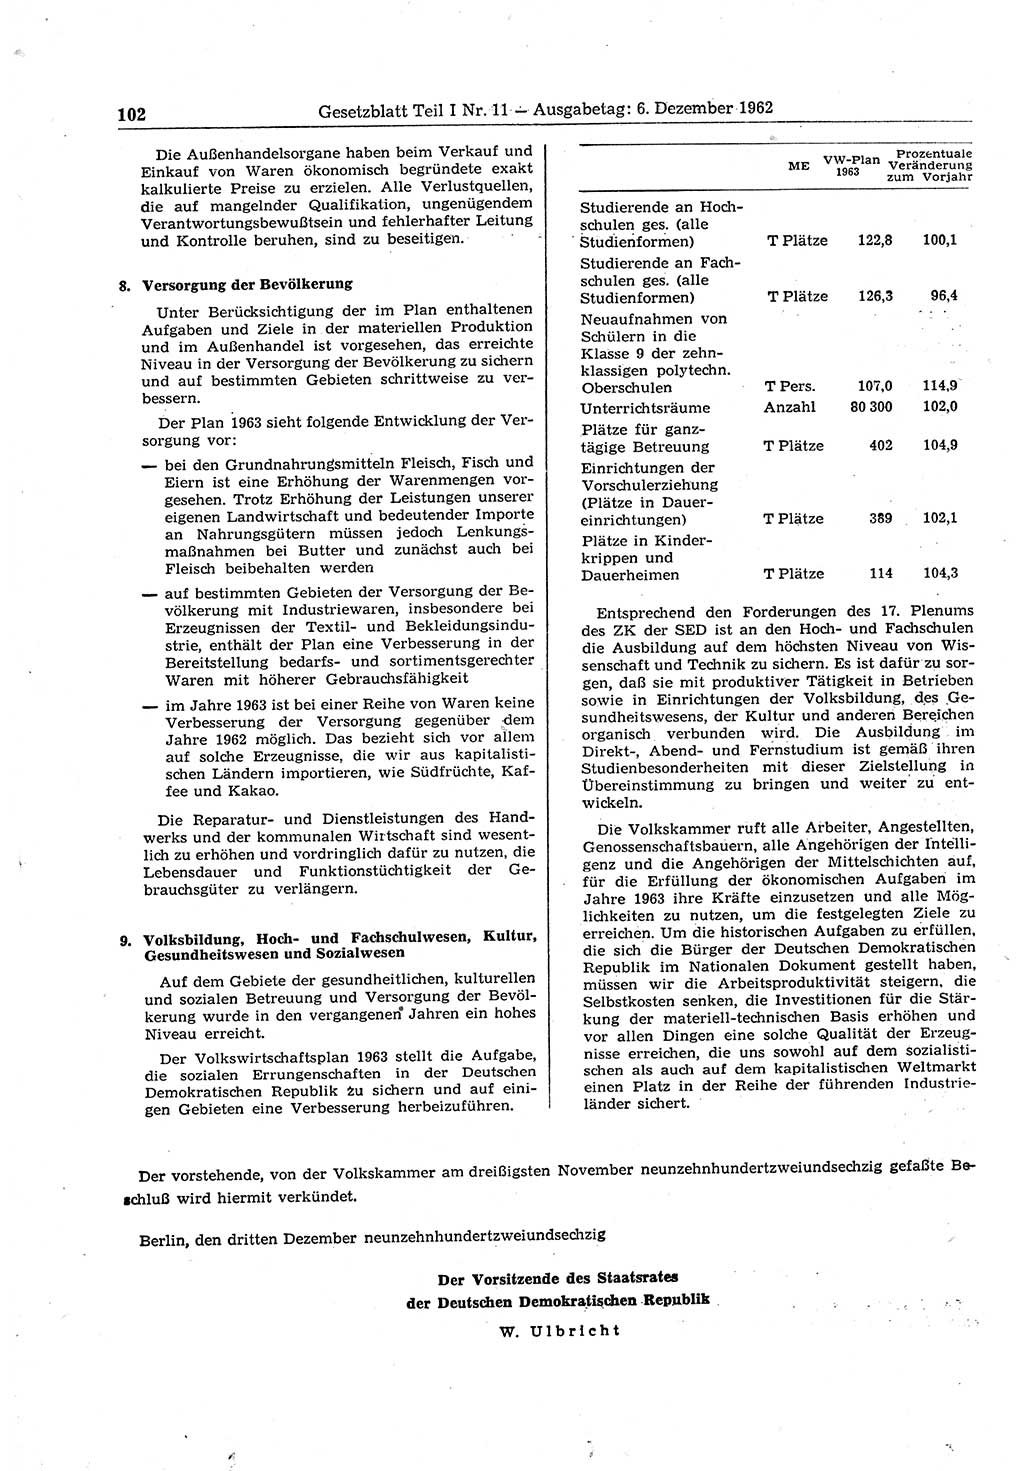 Gesetzblatt (GBl.) der Deutschen Demokratischen Republik (DDR) Teil Ⅰ 1962, Seite 102 (GBl. DDR Ⅰ 1962, S. 102)